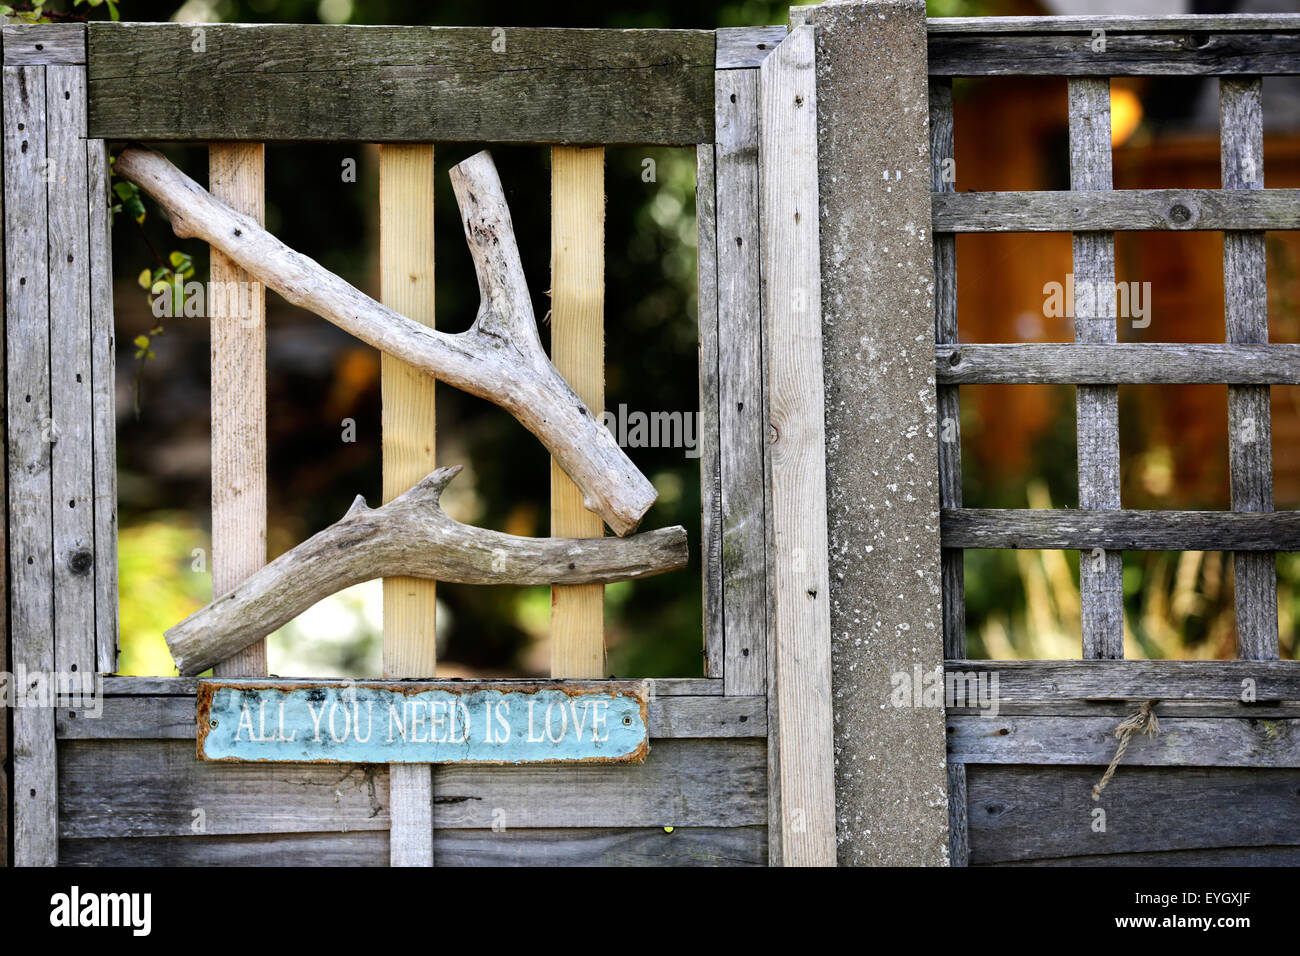 Un viejo cartel en una puerta de madera que reza: "Todo lo que necesitas es amor' Foto de stock